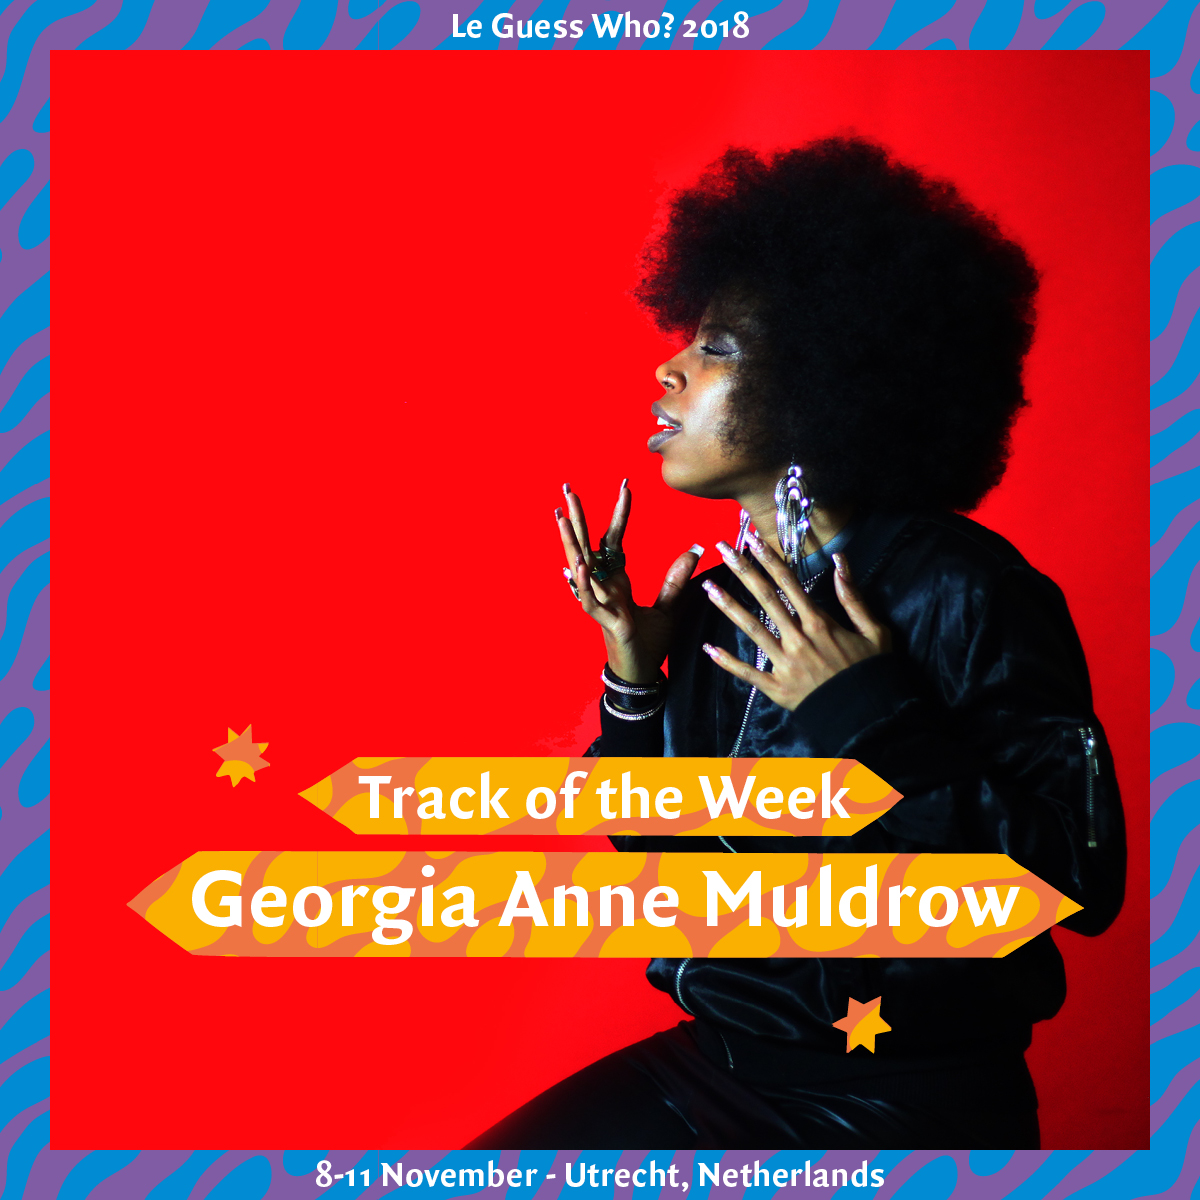  Track of the Week #15: Georgia Anne Muldrow - 'Great Blacks'